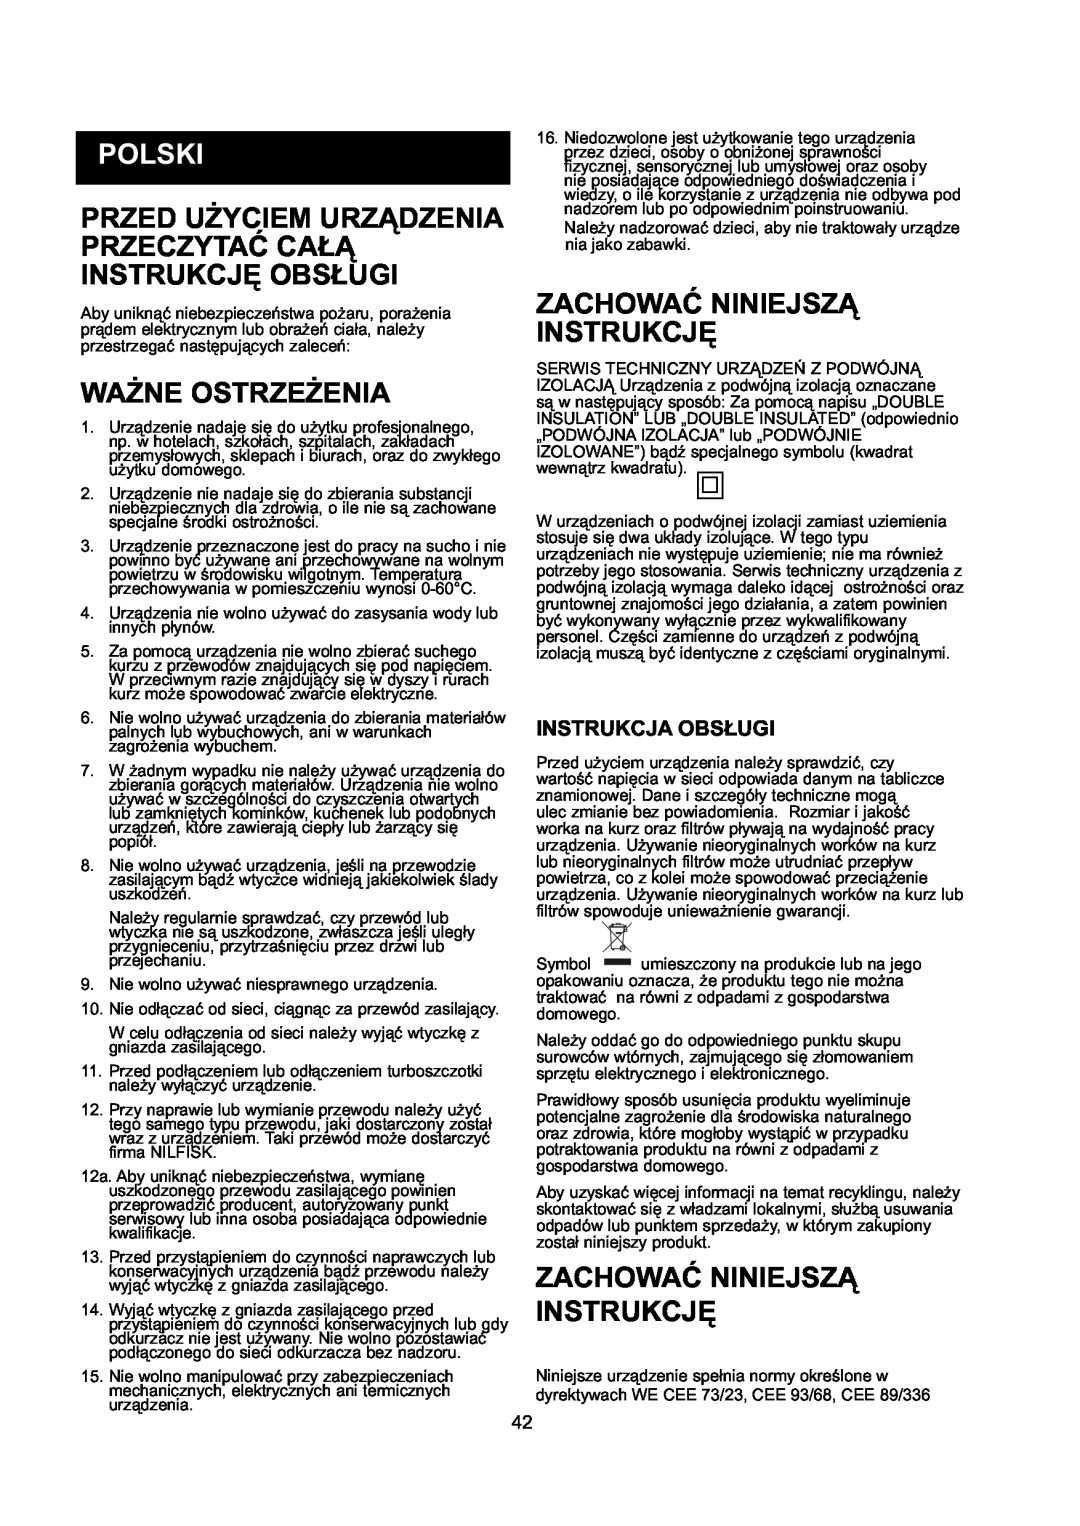 Nilfisk-ALTO GD 10 Back, GD 5 Back manual Polski, Ważne Ostrzeżenia, Zachować Niniejszą Instrukcję 